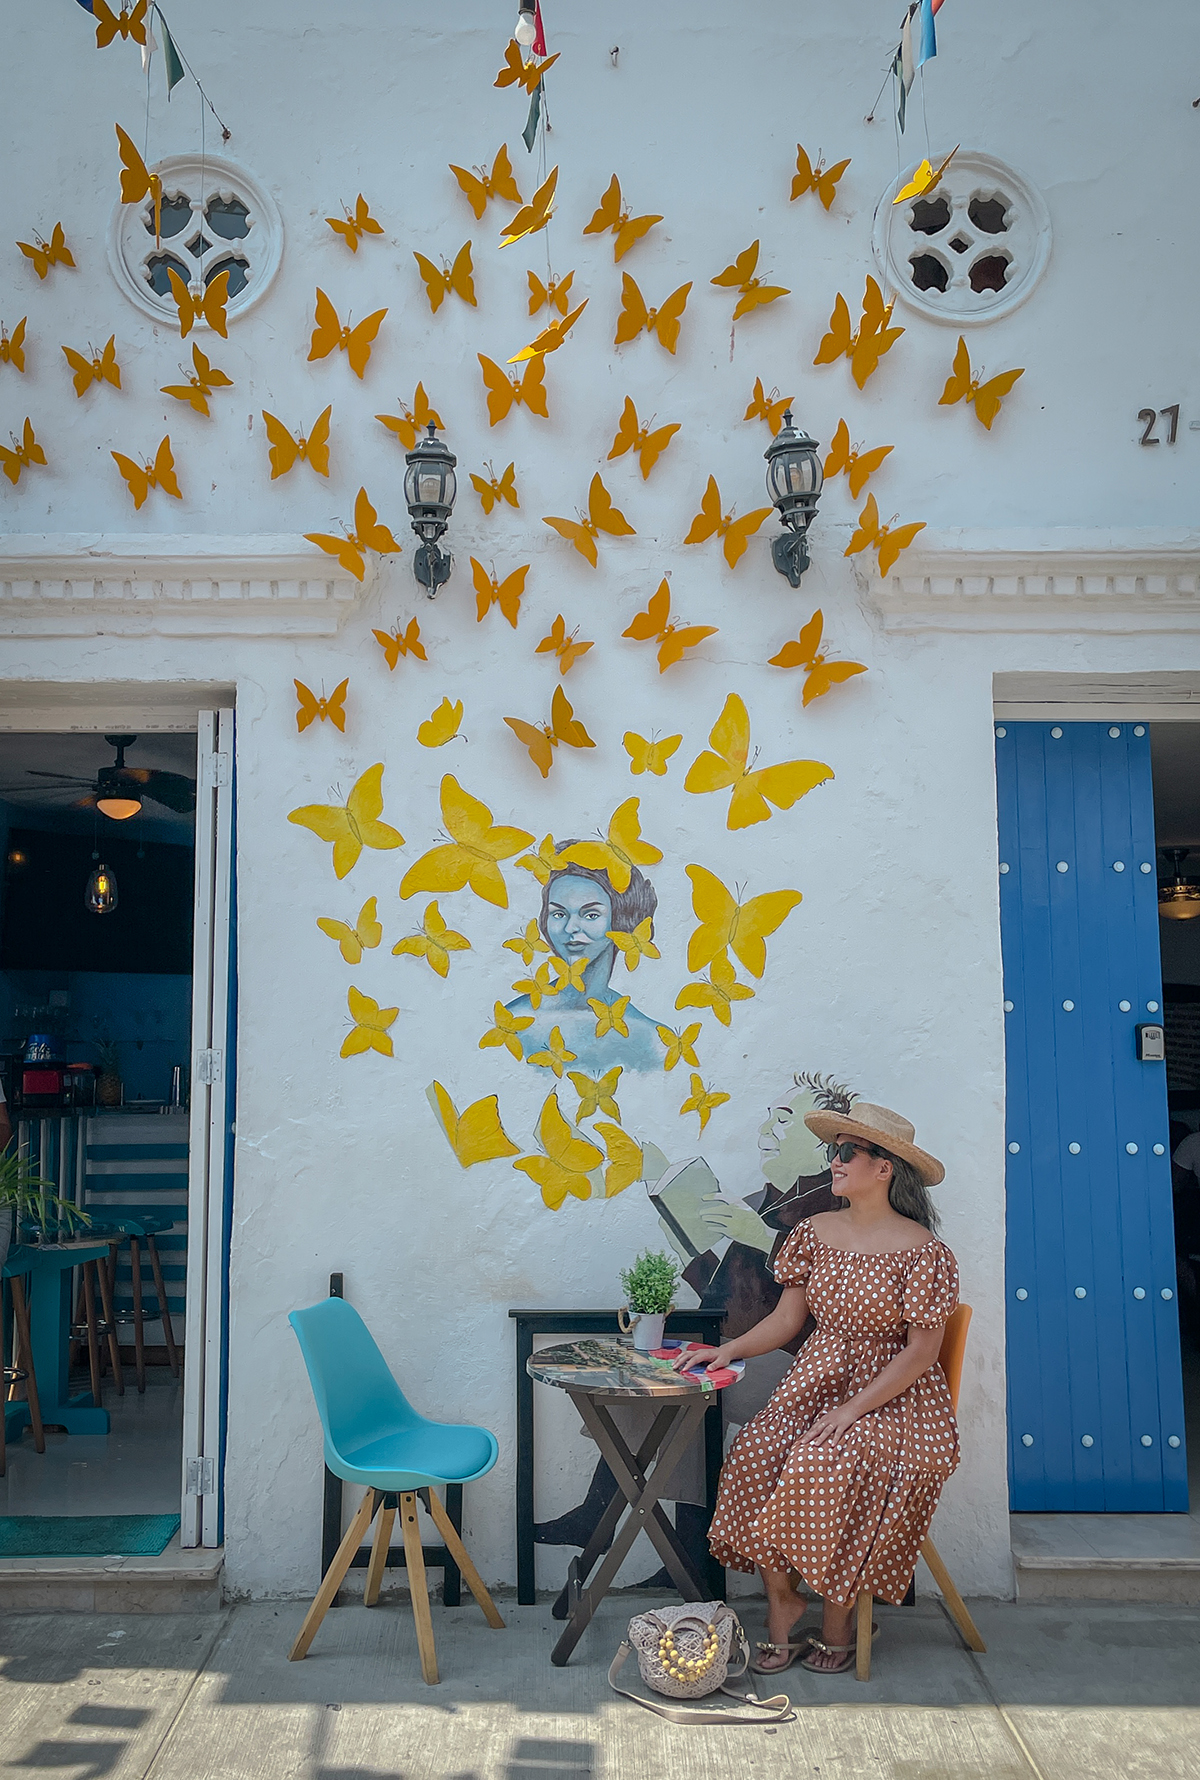 Butterfly Wall art in Getsemani Cartagena Colombia